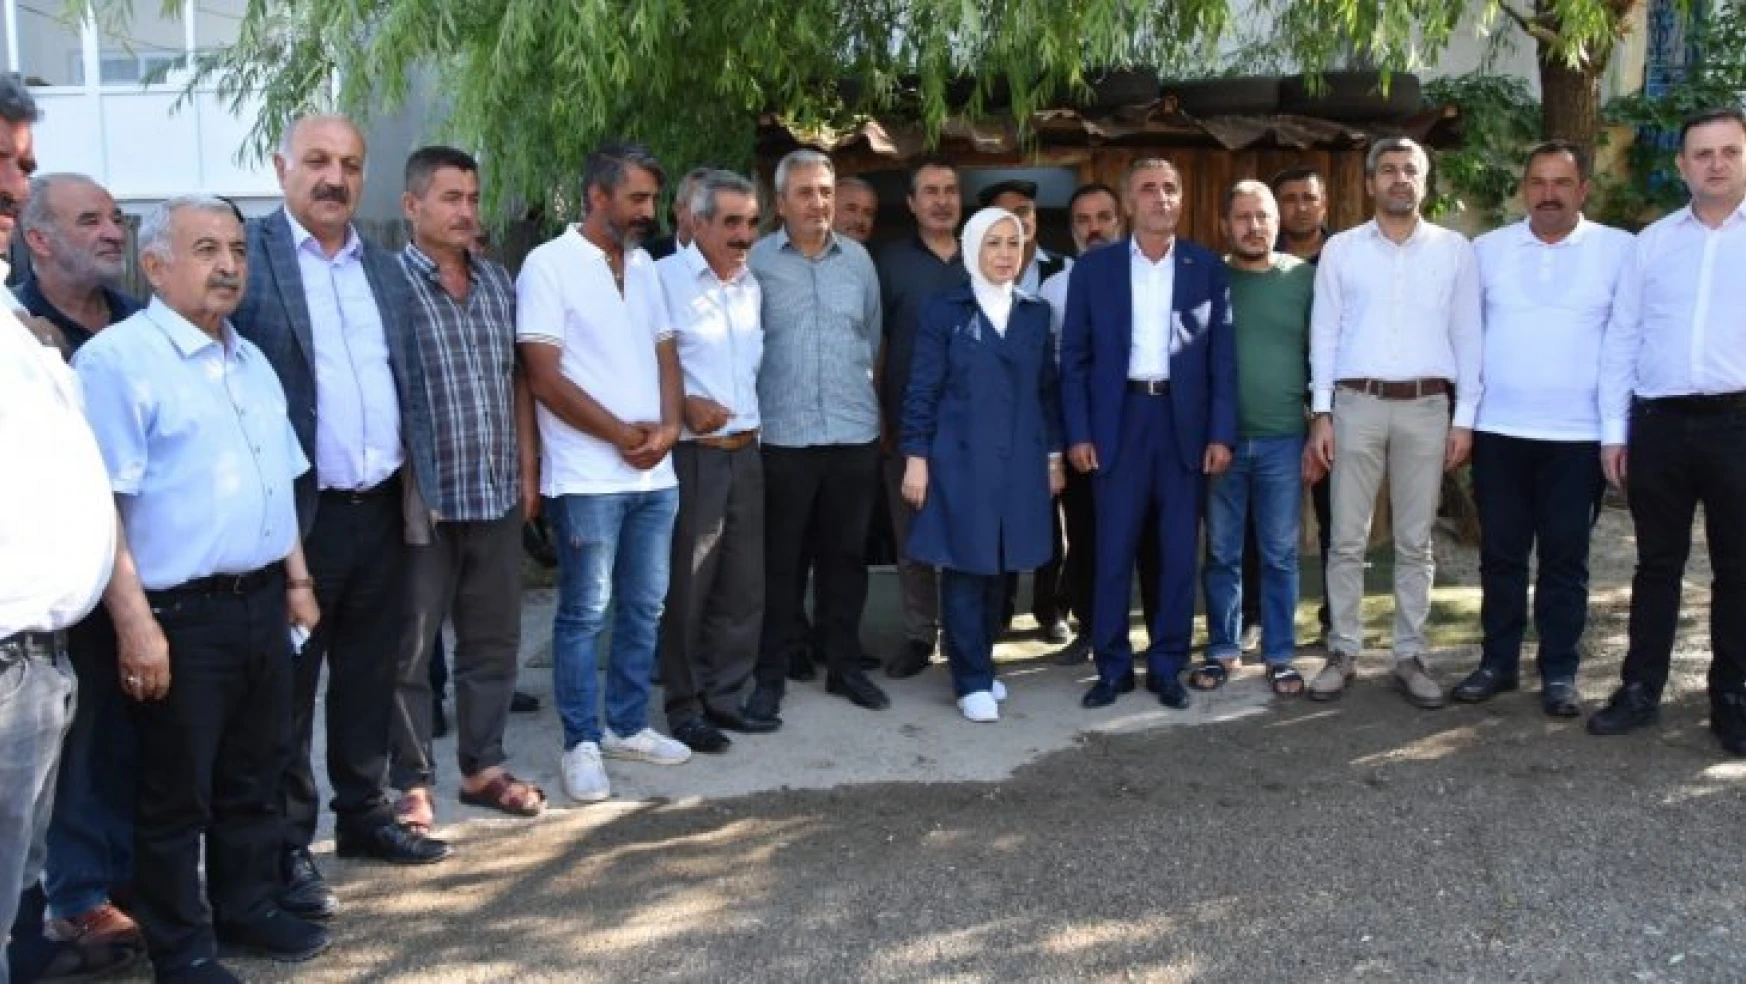 Milletvekili Çalık, Malatya'daki temasları kapsamında Kuyulu, Topsöğüt ve Cafana mahallelerini ziyaret etti.